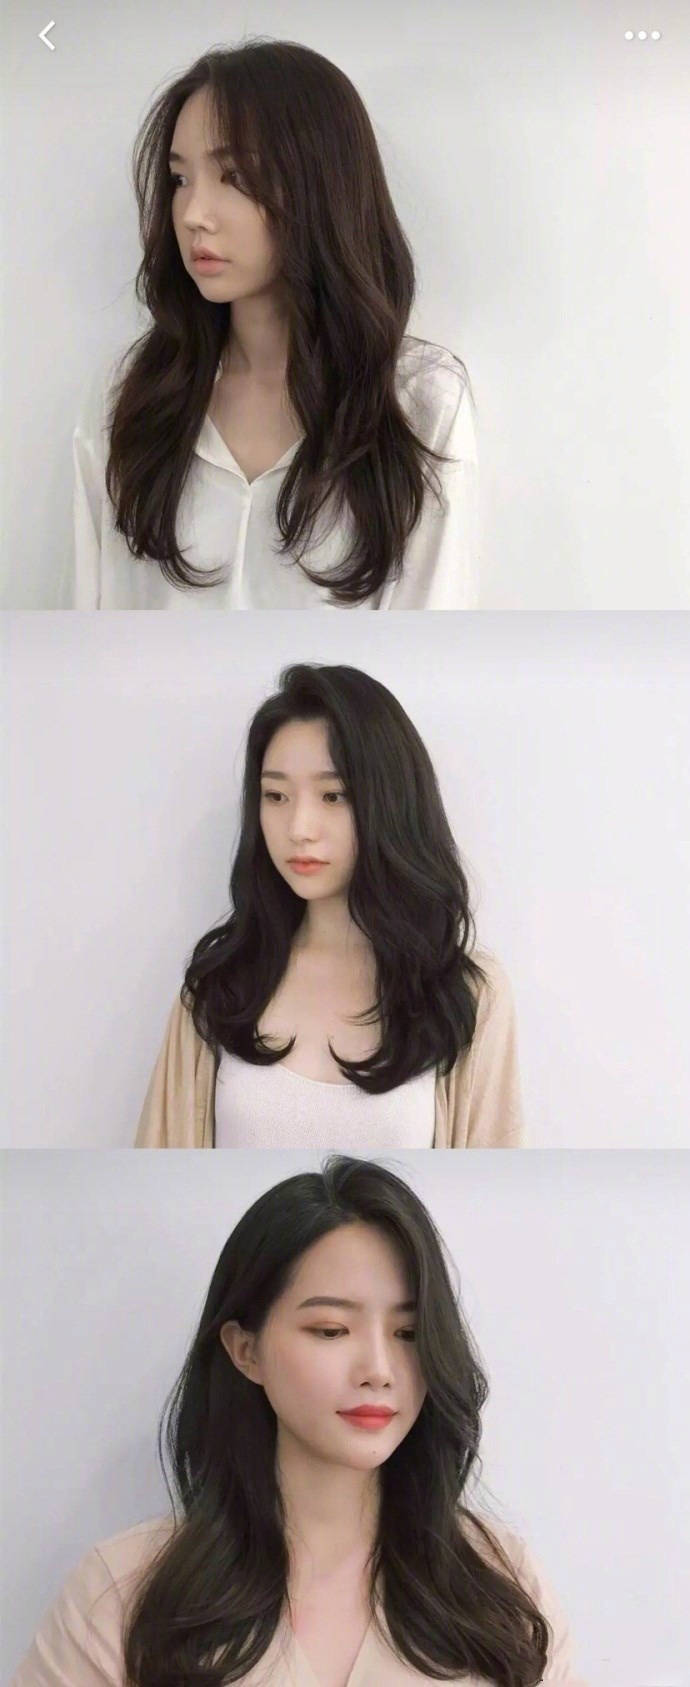 髮型作品参考:女士韓式髮型